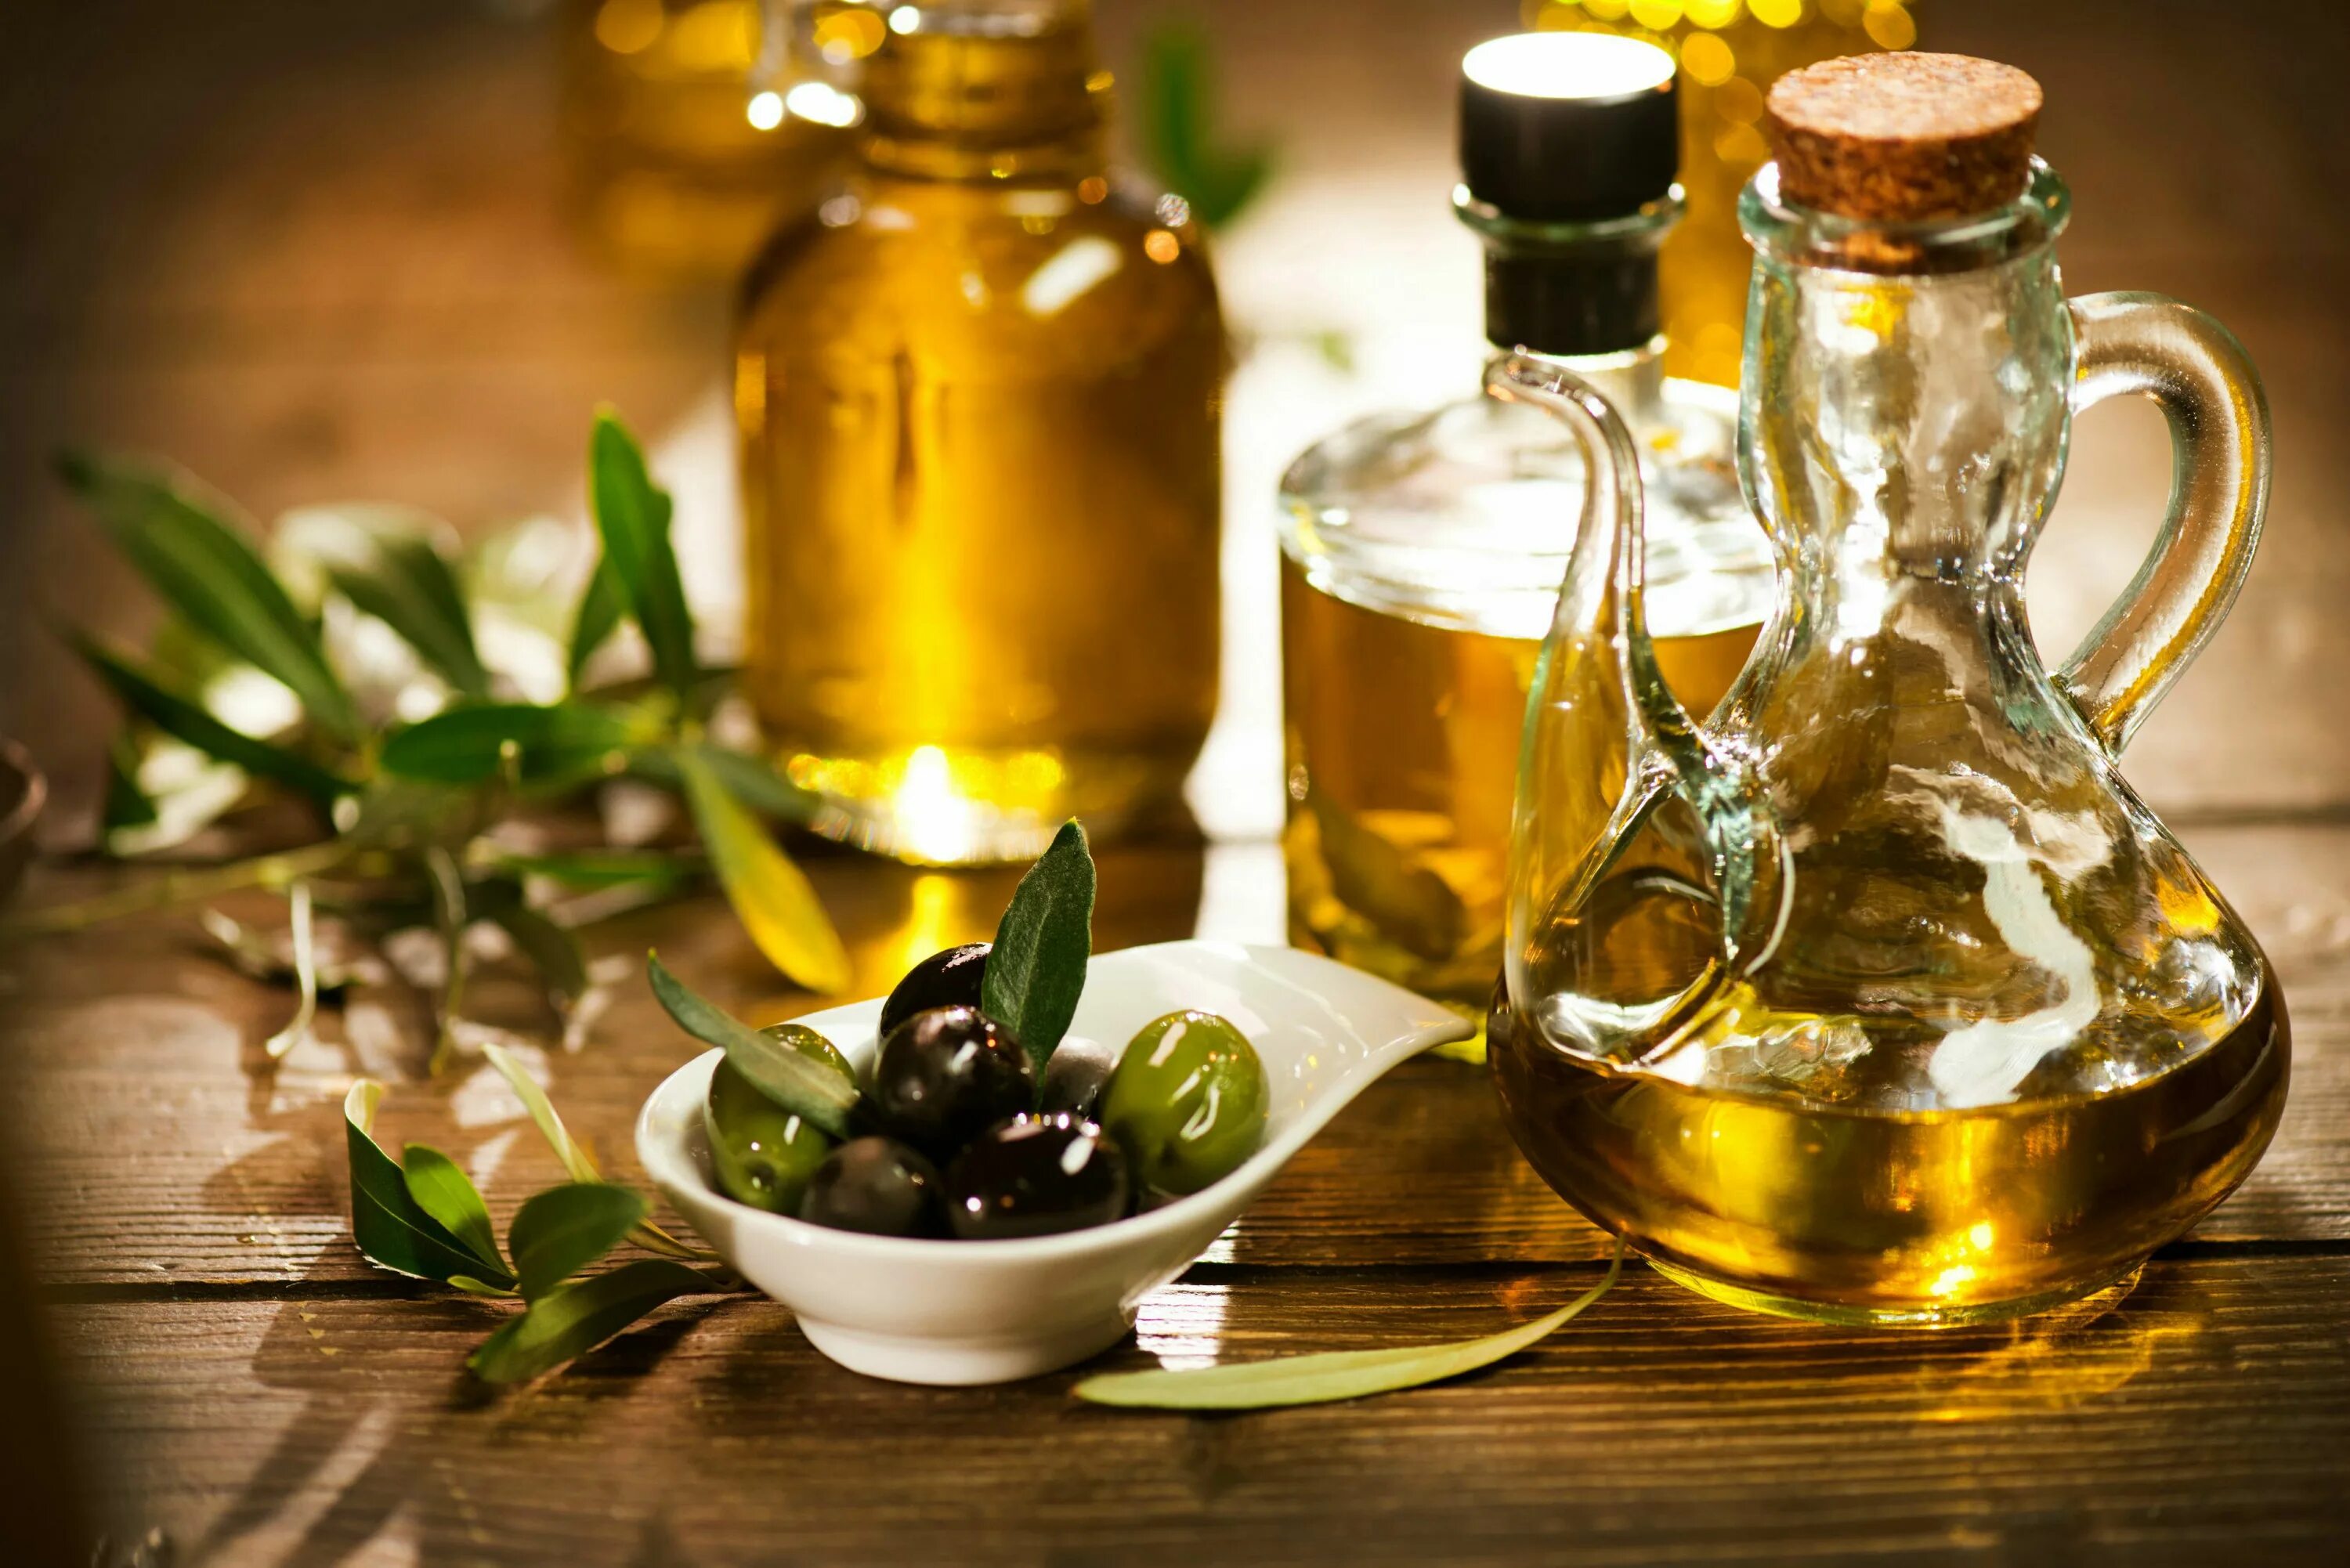 Olive Oil масло оливковое. Олив Ойл масло оливковое. Масло растительное с оливковым. Оливки и оливковое масло. Вред оливкового масла натощак